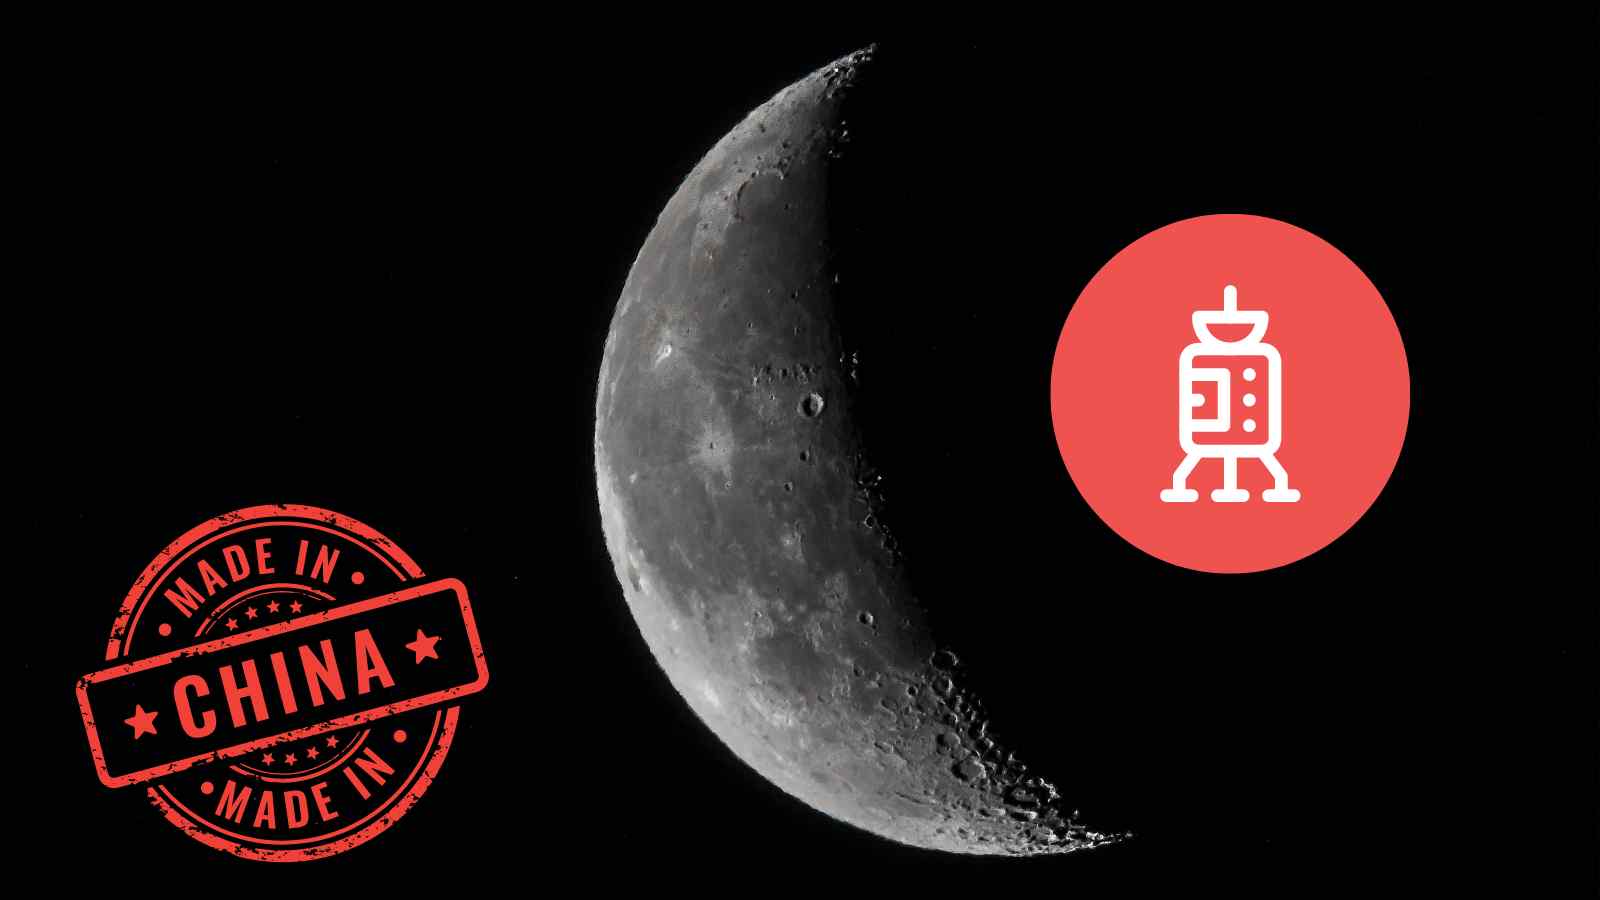 La missione Chang'e 6 è stata un successo e la sonda è atterrata nel lato oscuro della Luna